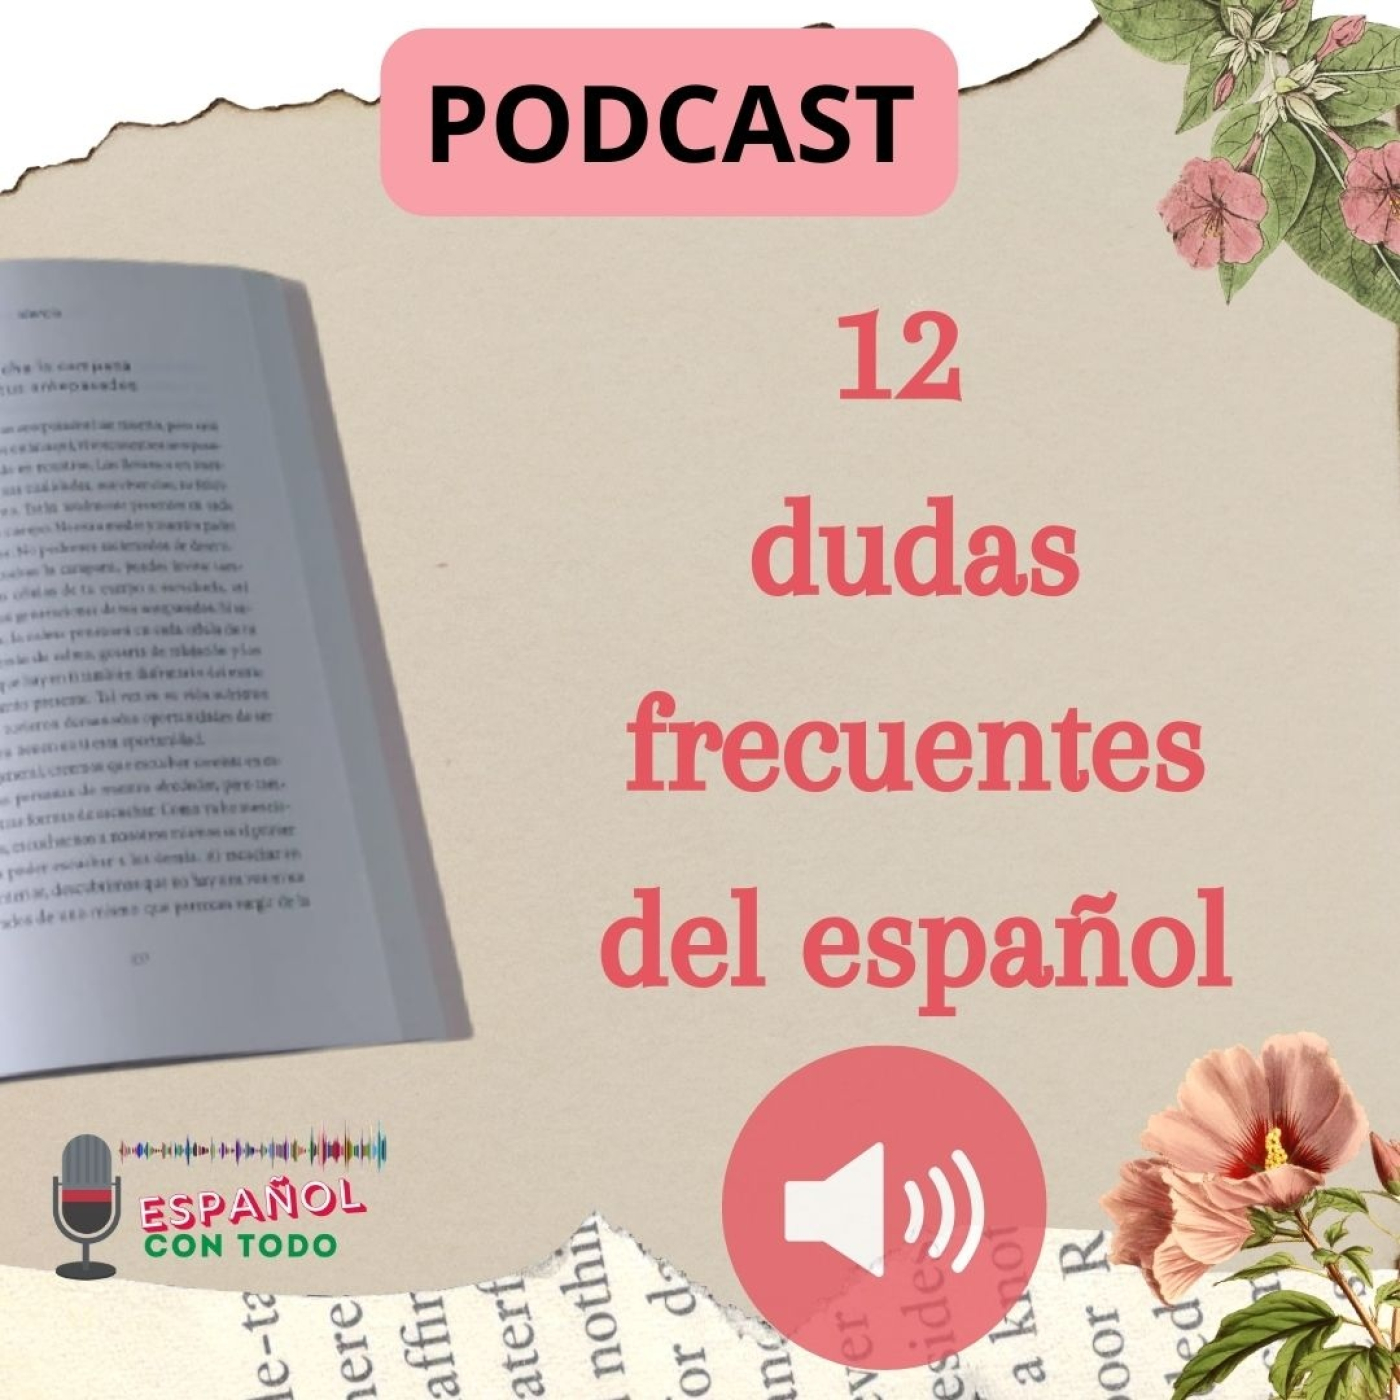 054 - 12 dudas frecuentes del español